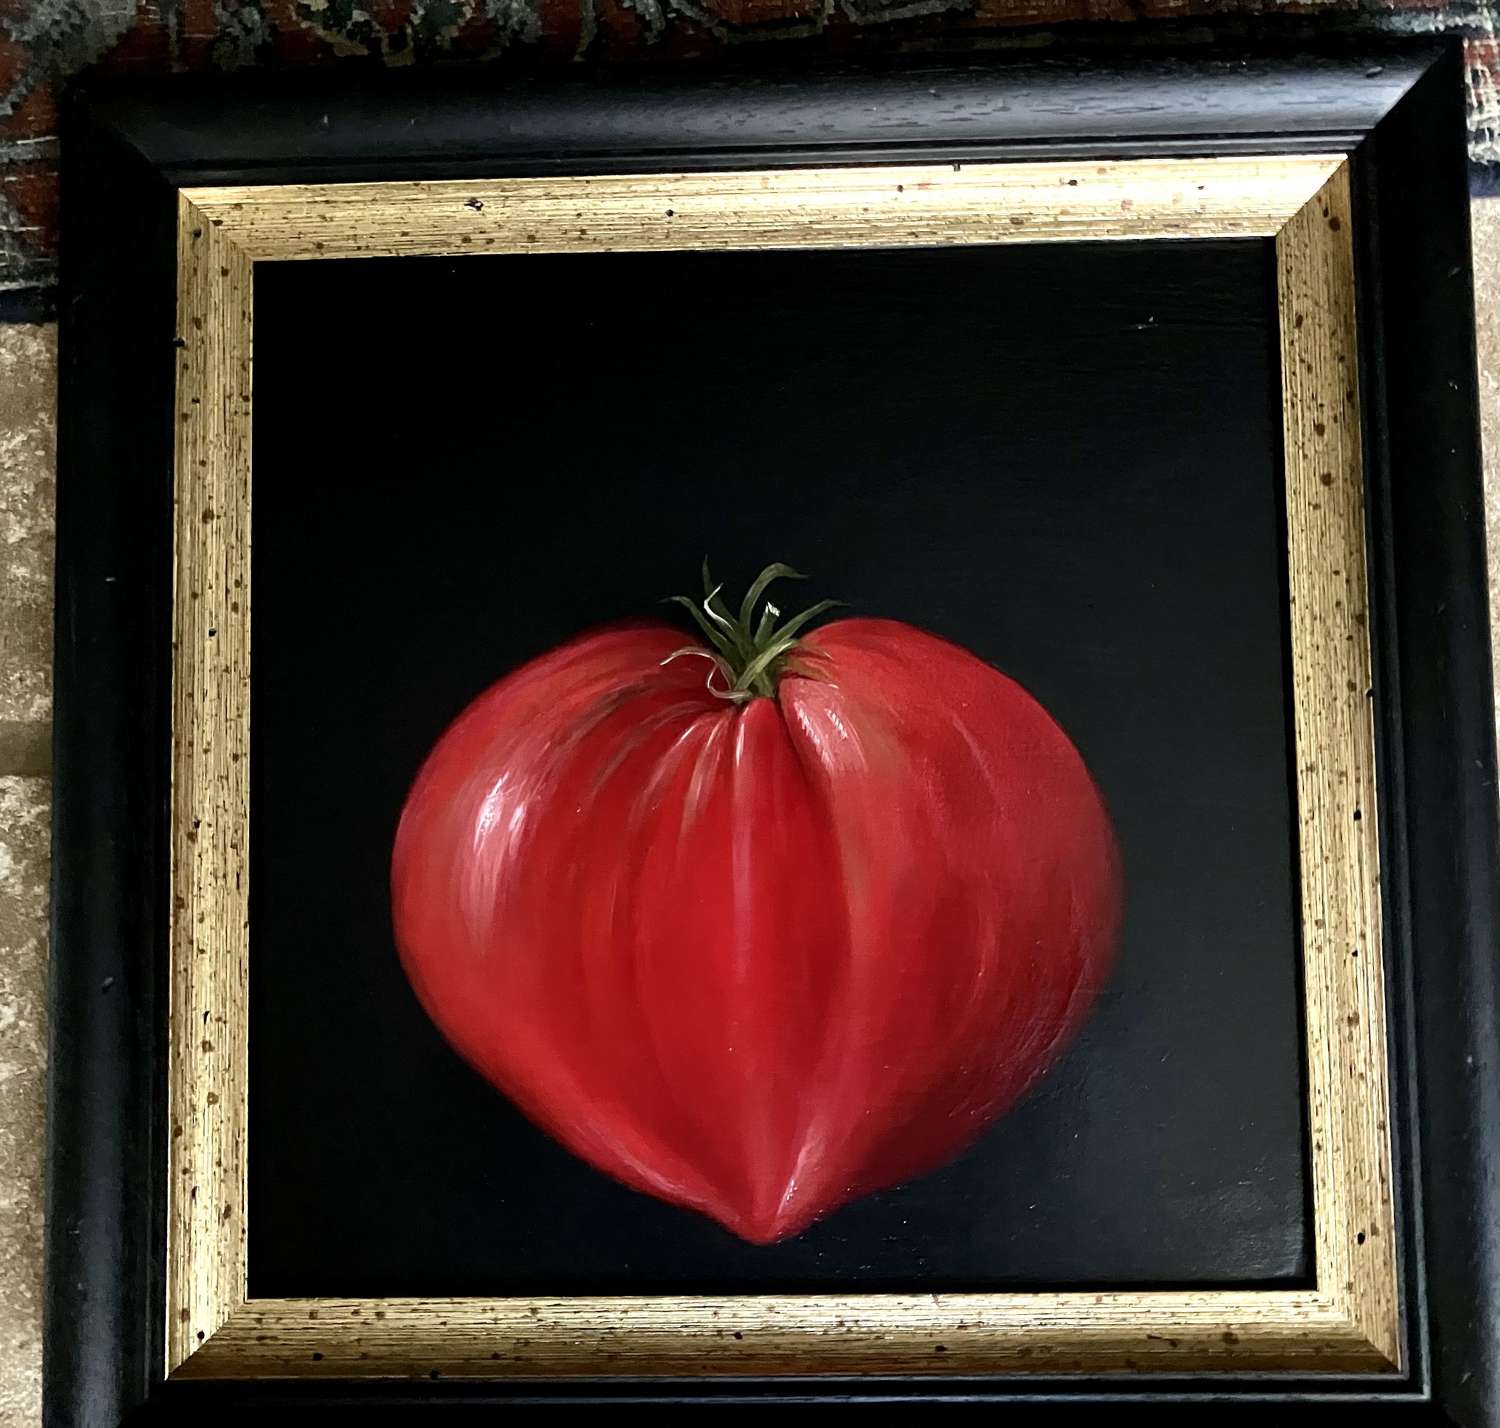 Large heart shaped tomato